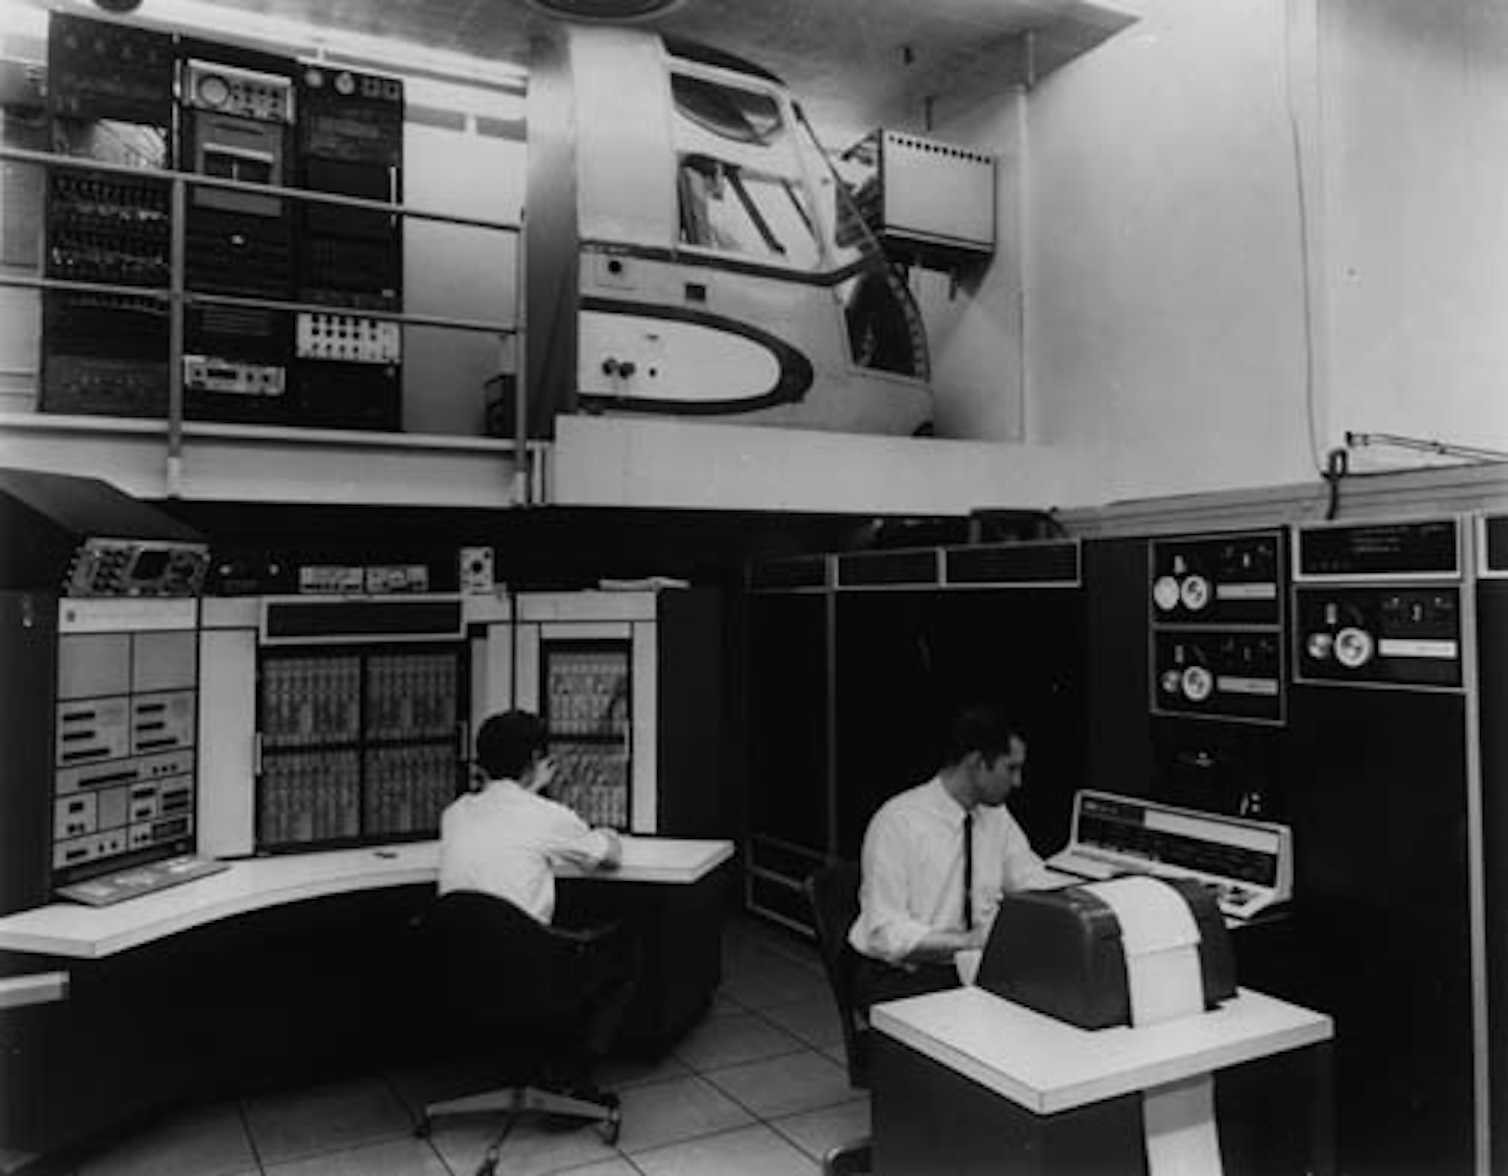 Сеть интернет начиналась. Сеть Арпанет 1969. ARPANET 1971. ARPANET 1969 первая компьютерная сеть. ARPANET 1960.